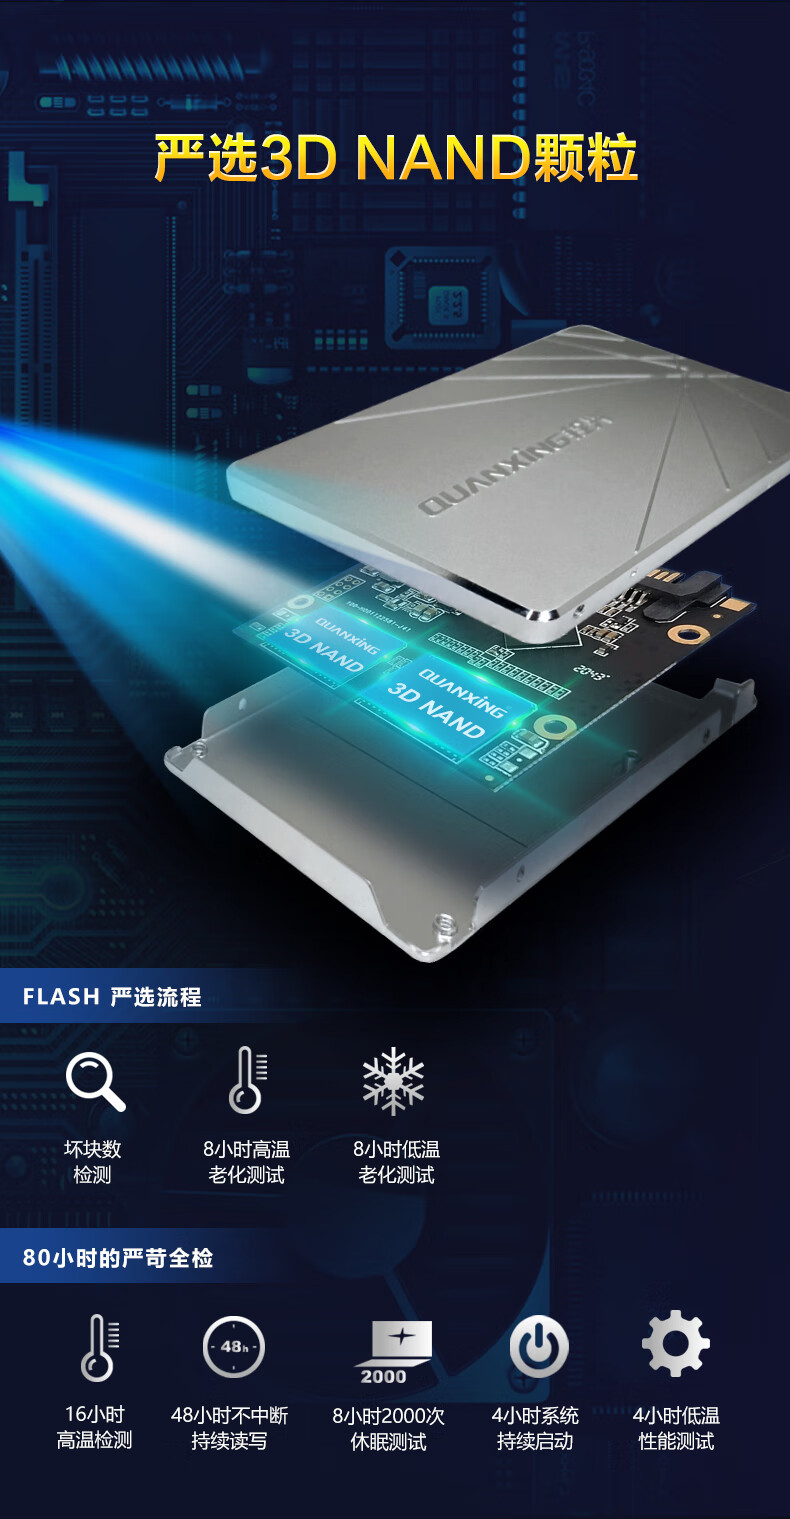 铨兴（QUANXING） SSD固态硬盘 2.5英寸SATA3.0接口 S101系列笔记本台式机升级 1TB 银色 读550MB/S 写500MB/S